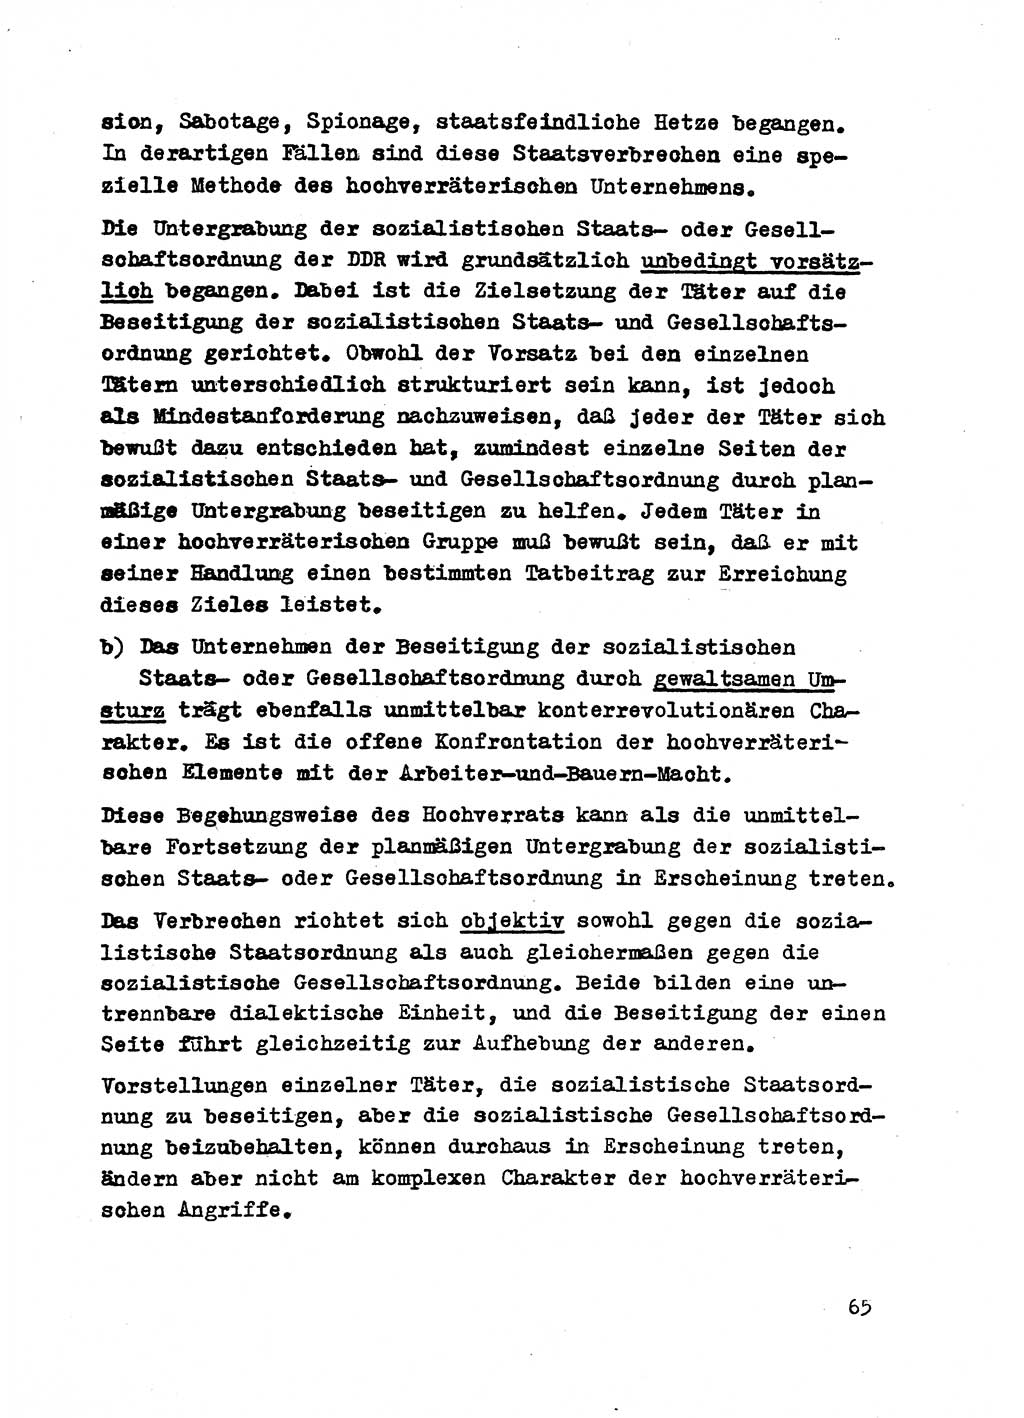 Strafrecht der DDR (Deutsche Demokratische Republik), Besonderer Teil, Lehrmaterial, Heft 2 1969, Seite 65 (Strafr. DDR BT Lehrmat. H. 2 1969, S. 65)